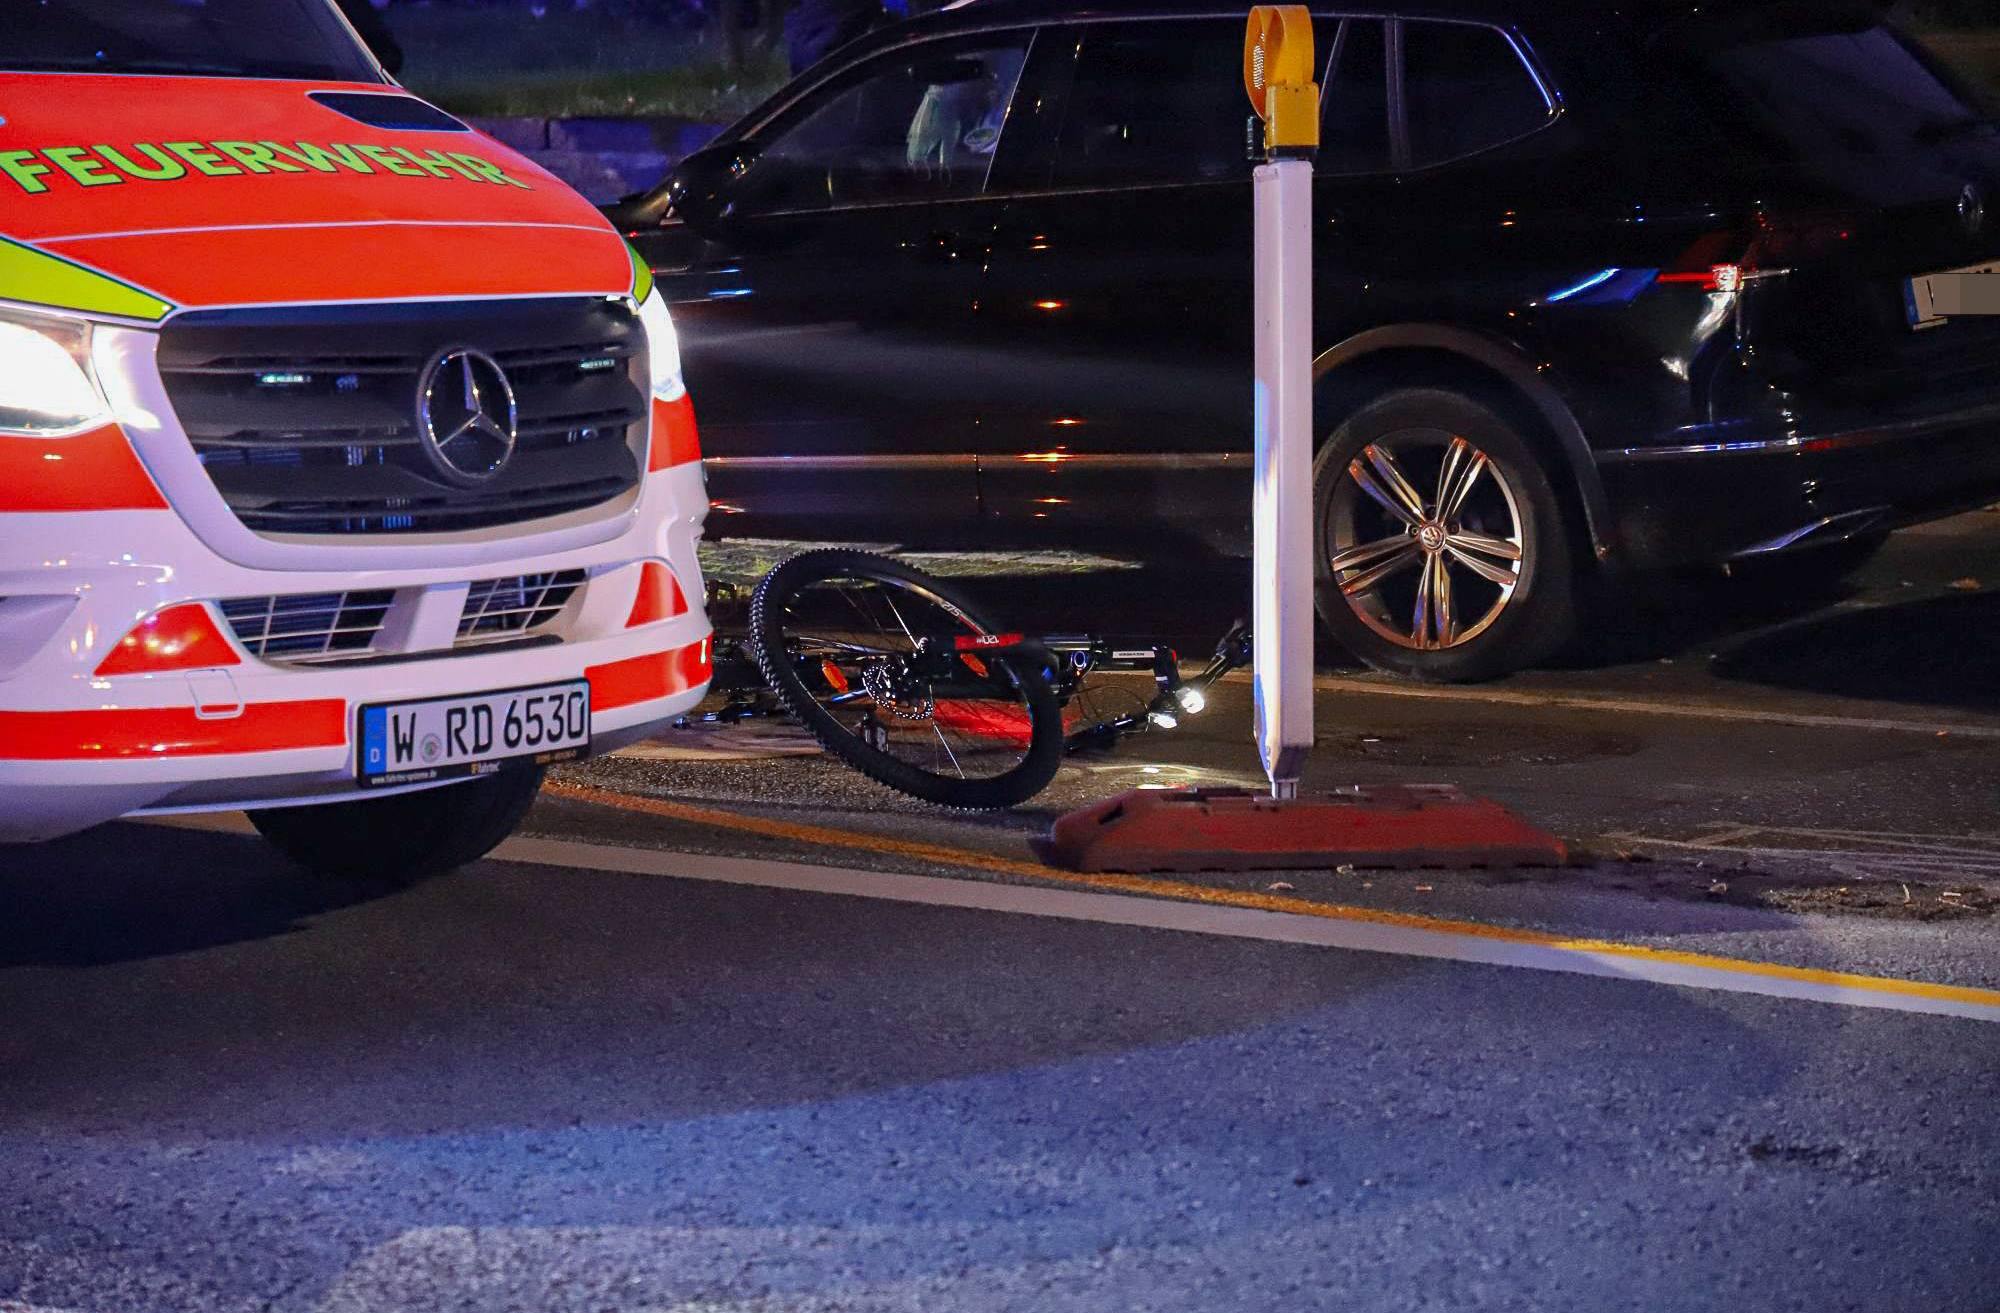  Genau solche Unfälle vermeiden - das ist das Ziel des Fahrradtrainings, das die Polizei gemeinsam mit der Stadt Wuppertal anbietet. 